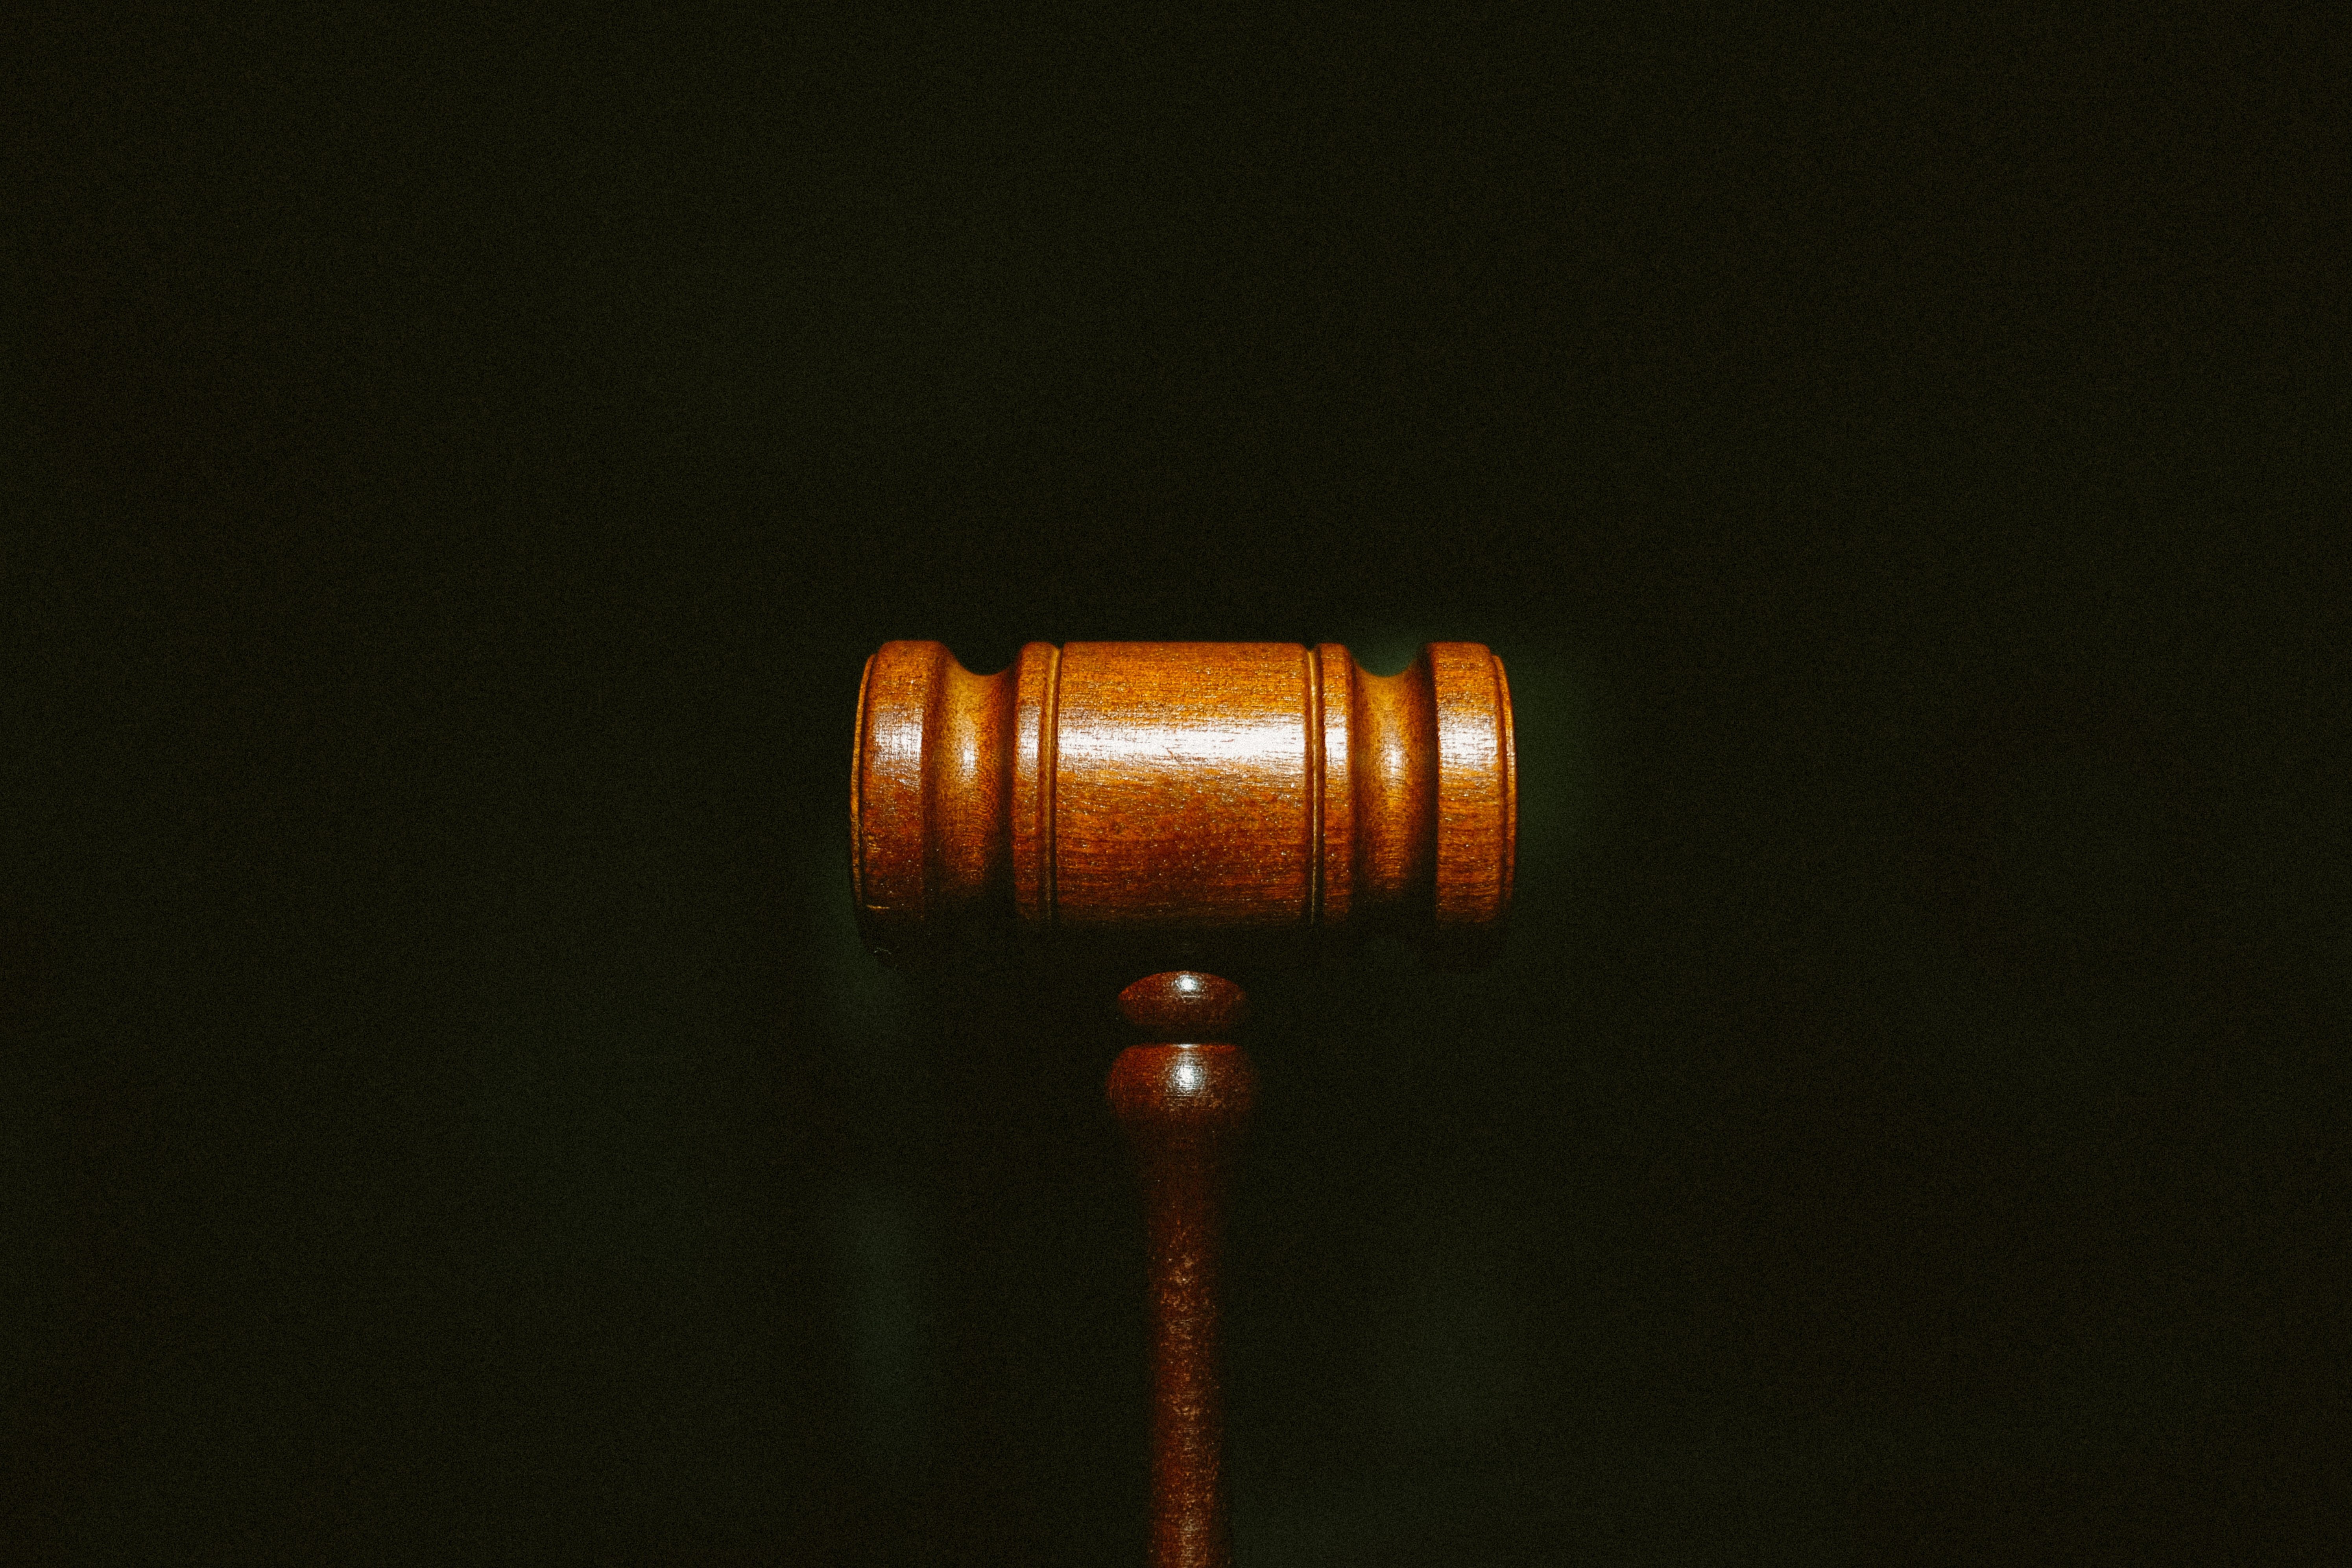 Una aplicación para el móvil permite valorar jueces y juzgados de todo el Estado